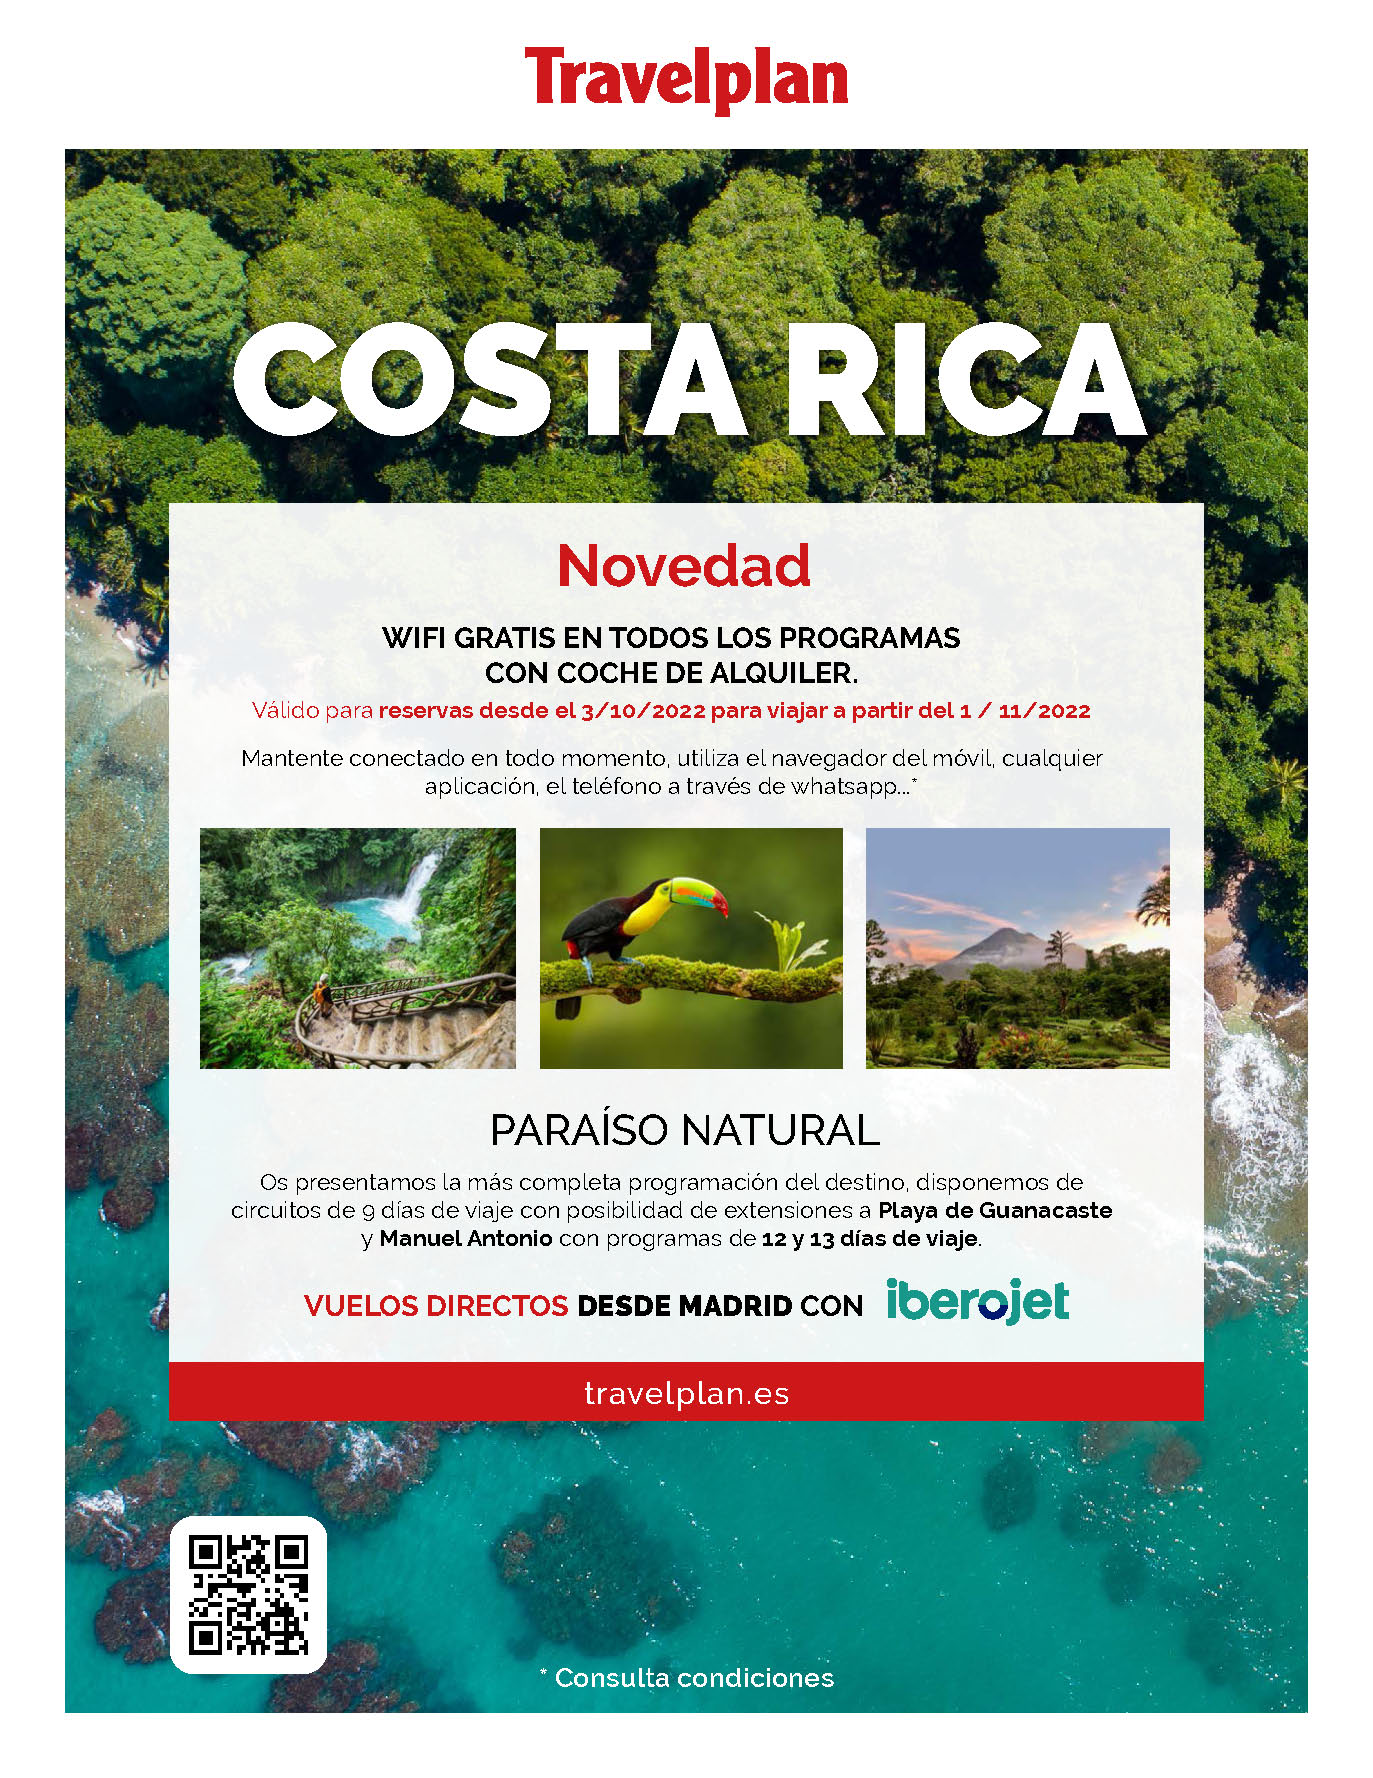 Ofertas Travelplan Circuitos por Costa Rica Otoño Invierno 2022-2023 salidas en vuelo directo desde Madrid con Iberojet